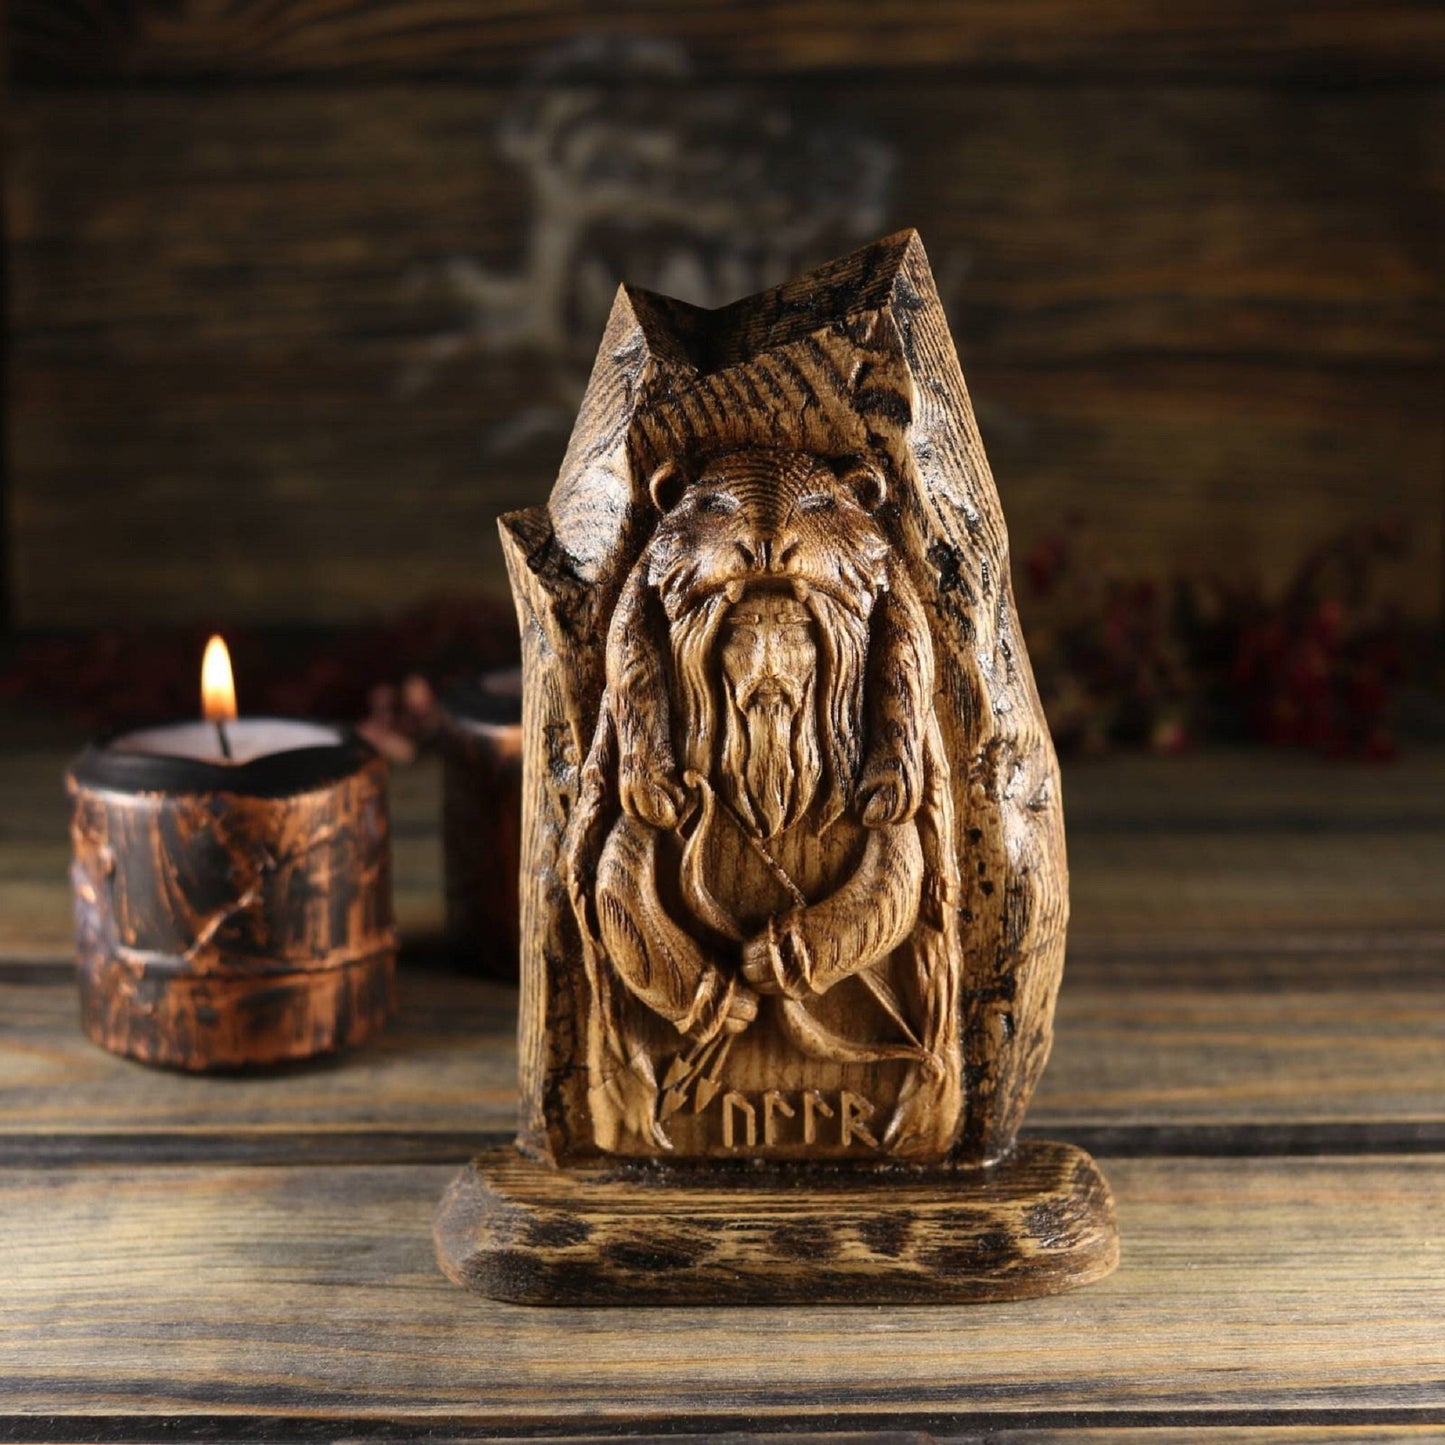 Ullr, Norse gods, Wood carving, mini decor, Wooden sculpture